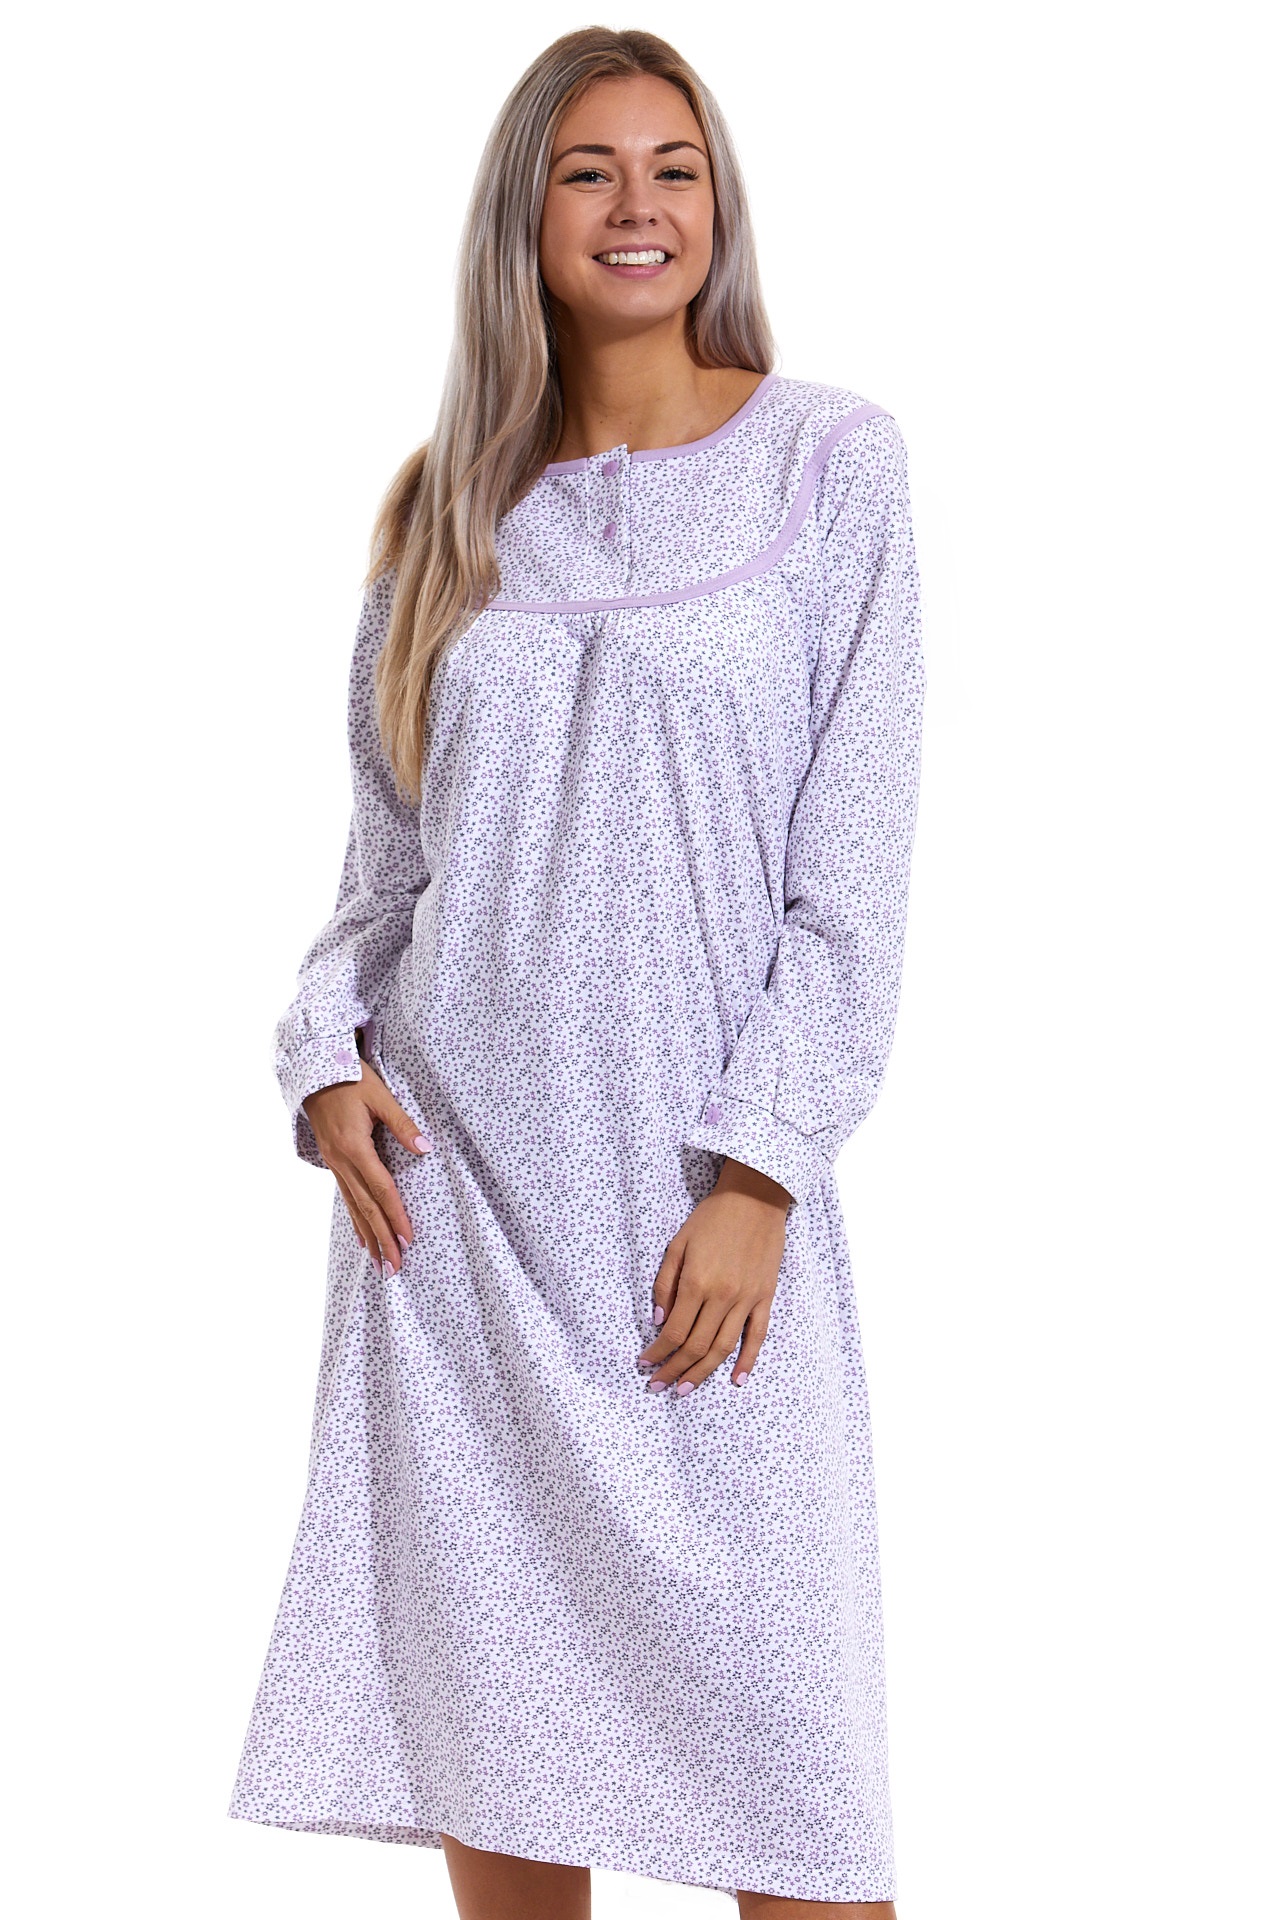 Teplá fialově květovaná noční košile v dlouhé délce na spaní